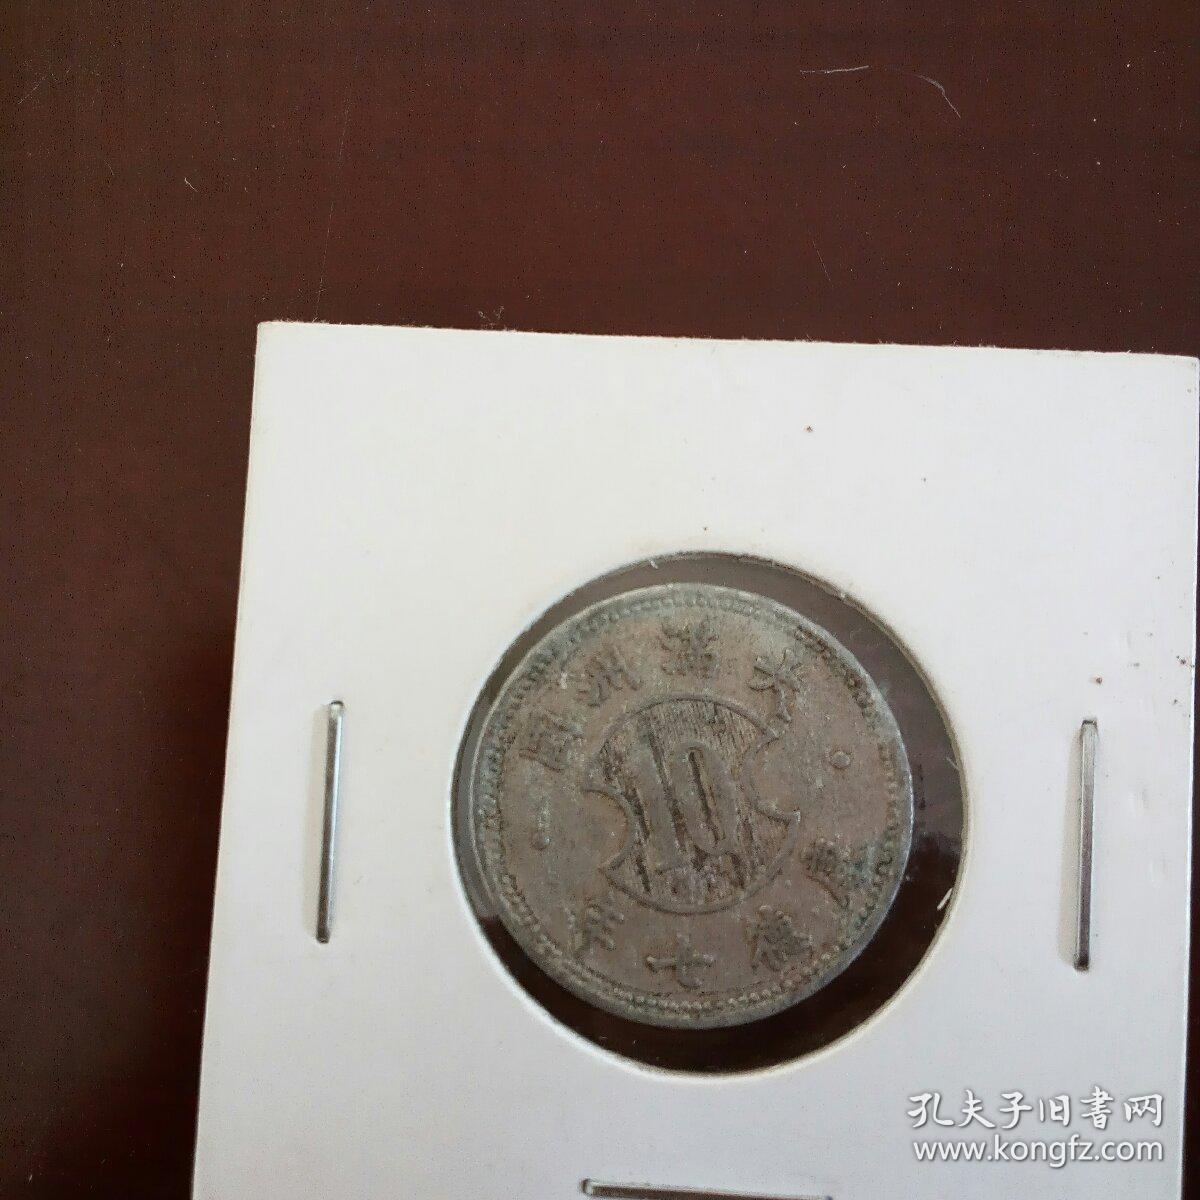 伪满洲国康德七年壹角铝币一枚。